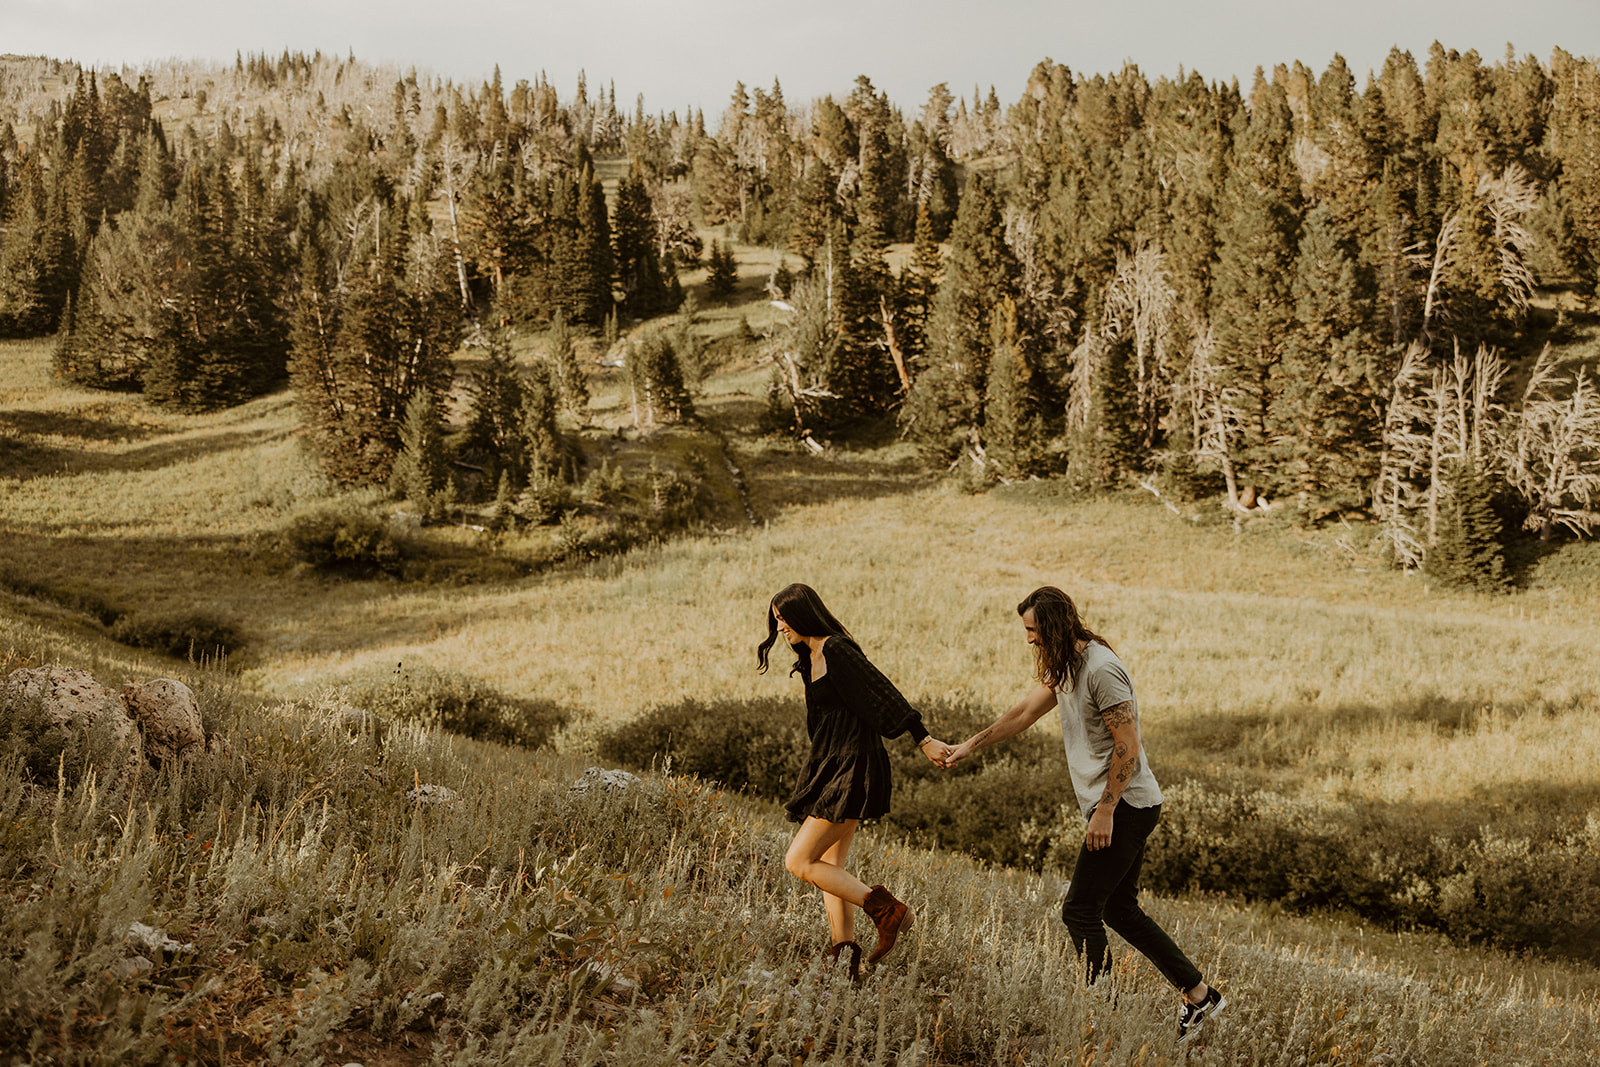 Adventure Couples Photos In The Mountains Of Bozeman, Montana